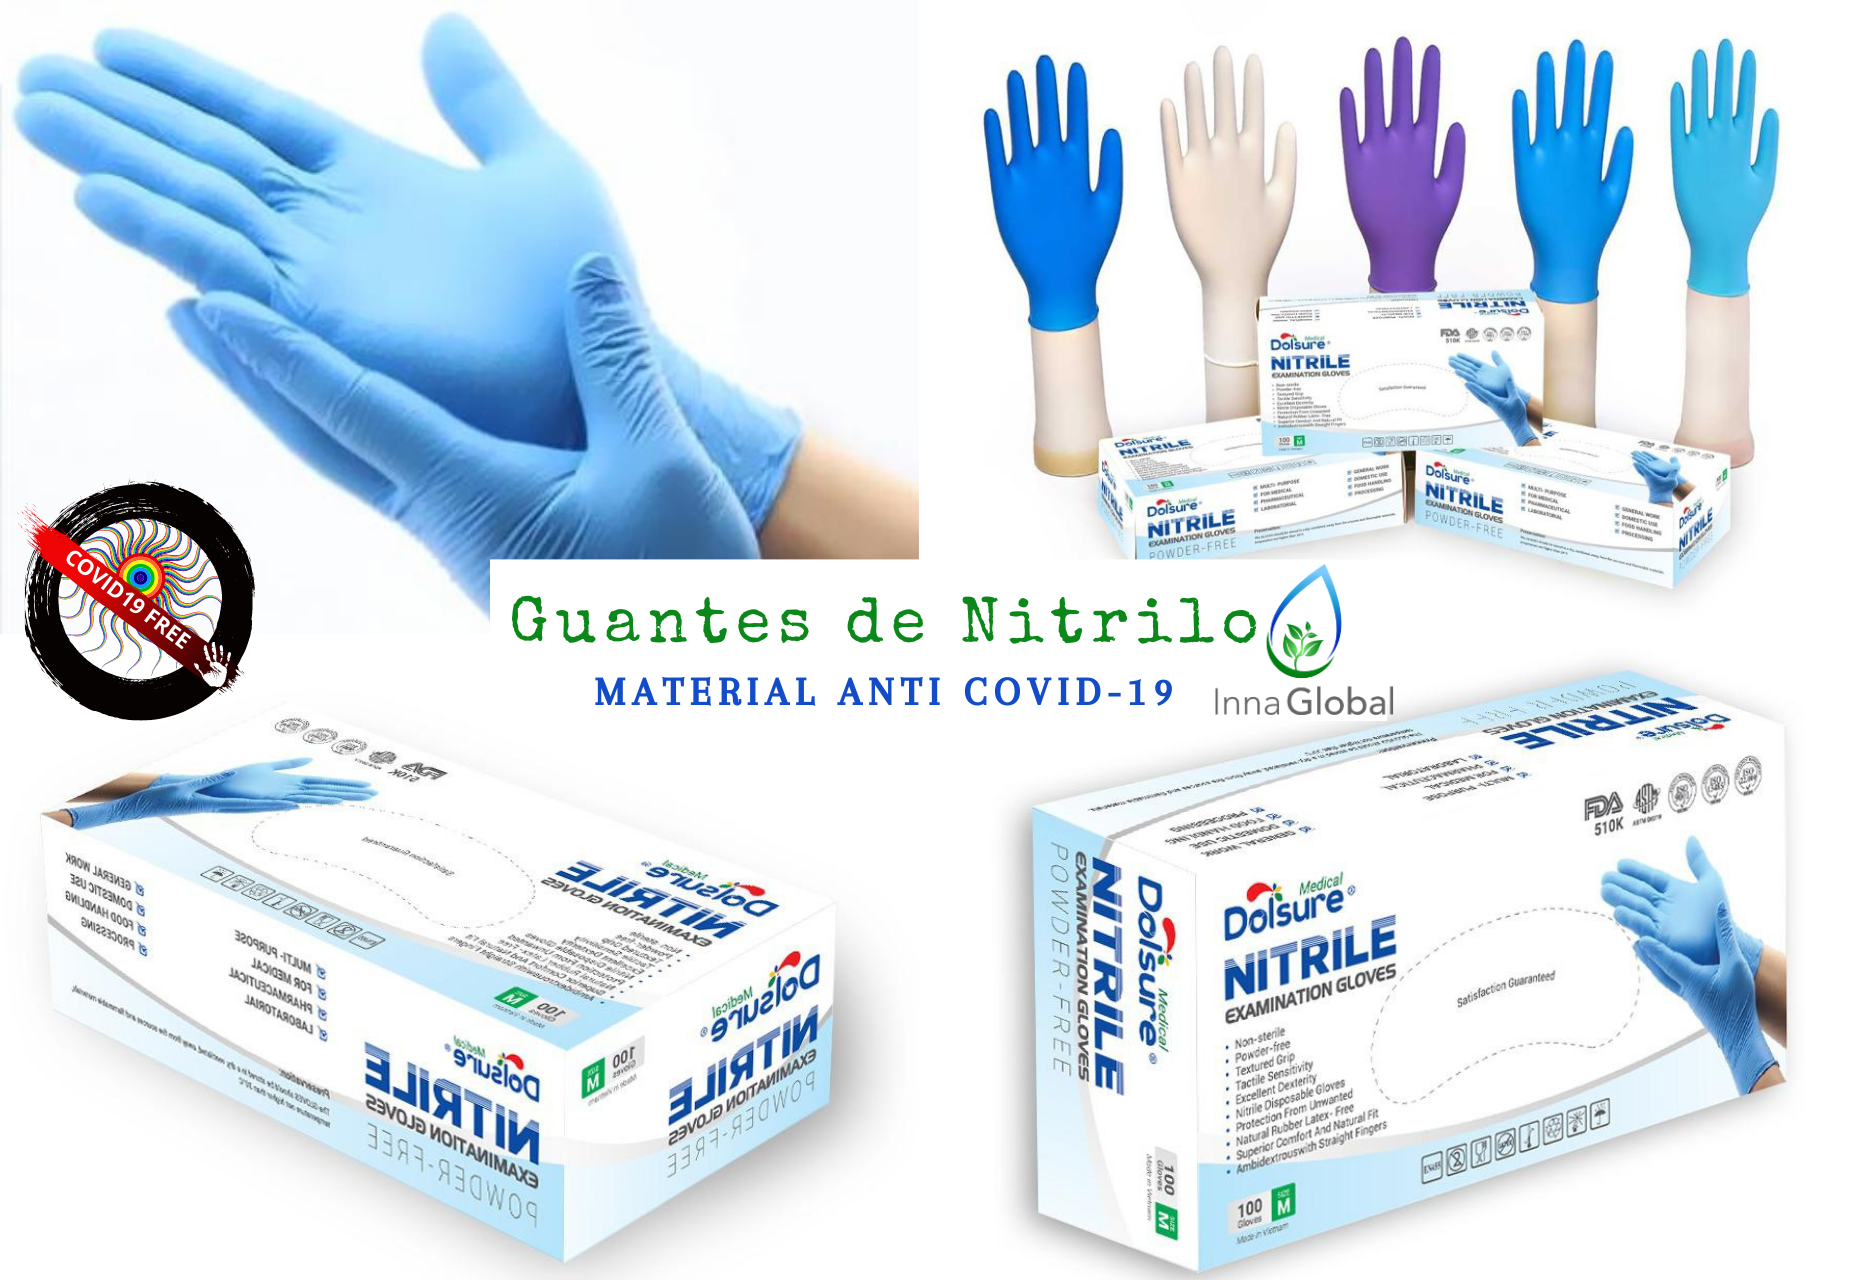 Firmamos contrato de colaboración con distribuidora alemana de productos farmacéuticos y sanitarios para la comercialización de guantes de nitrilo de primera calidad.